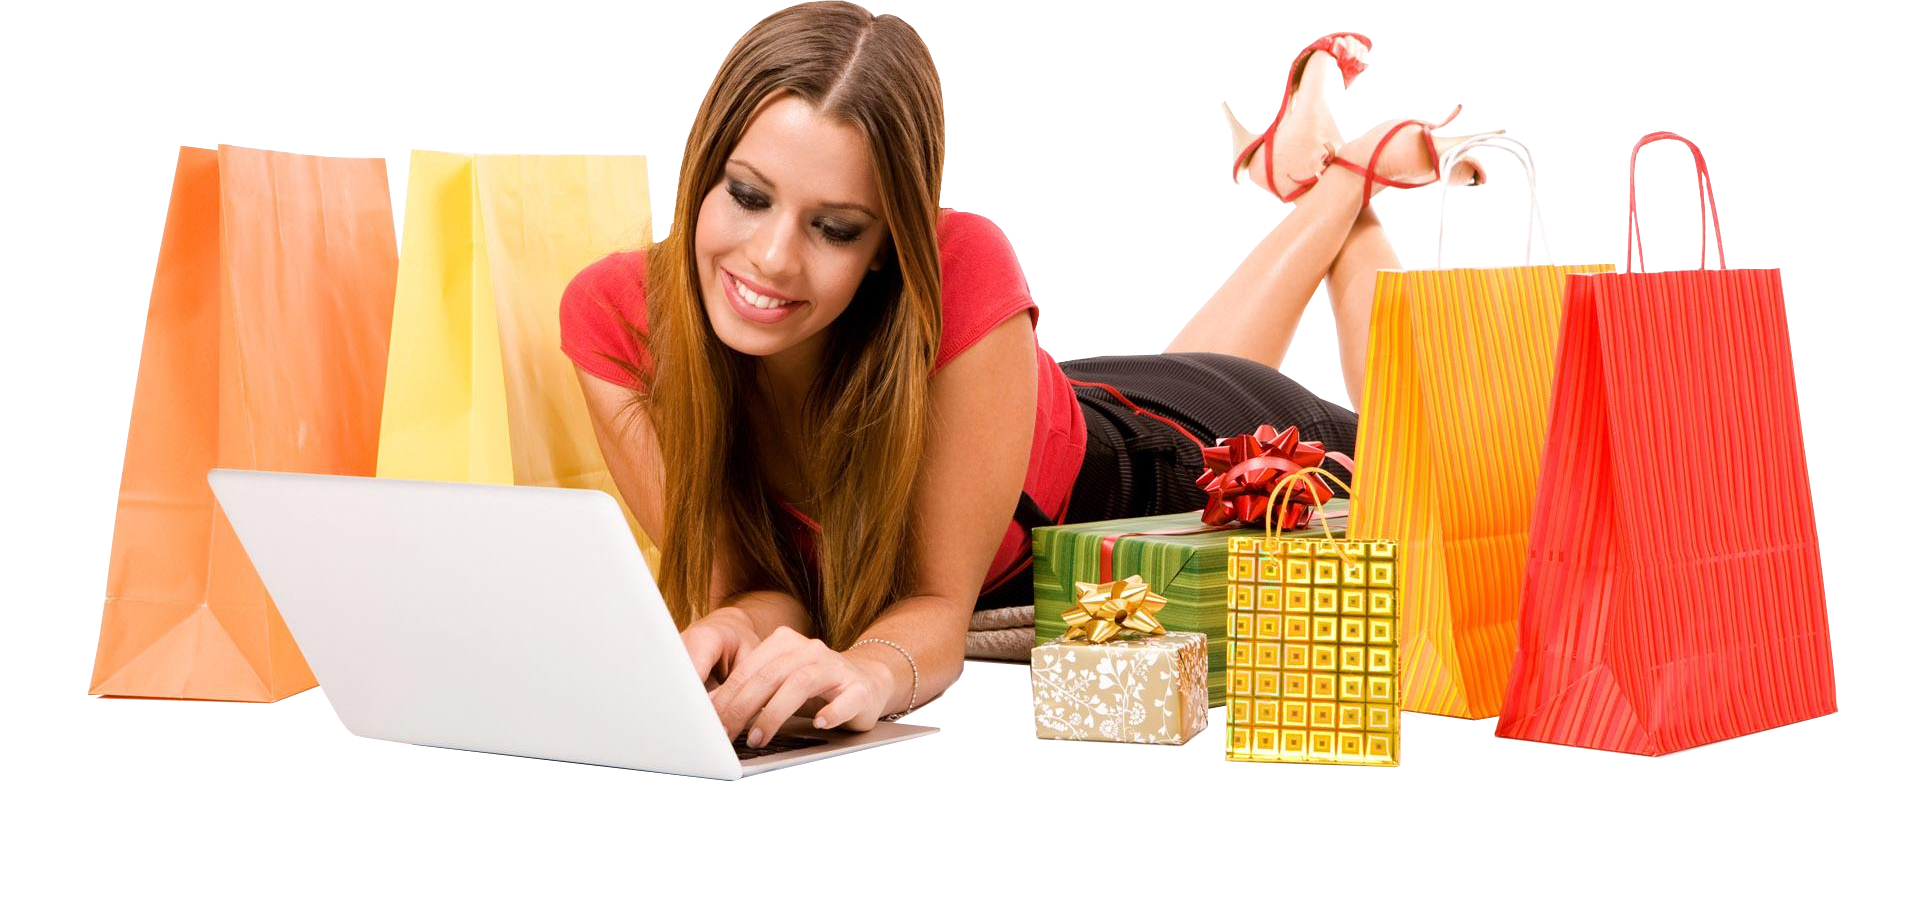 girl e-shopping